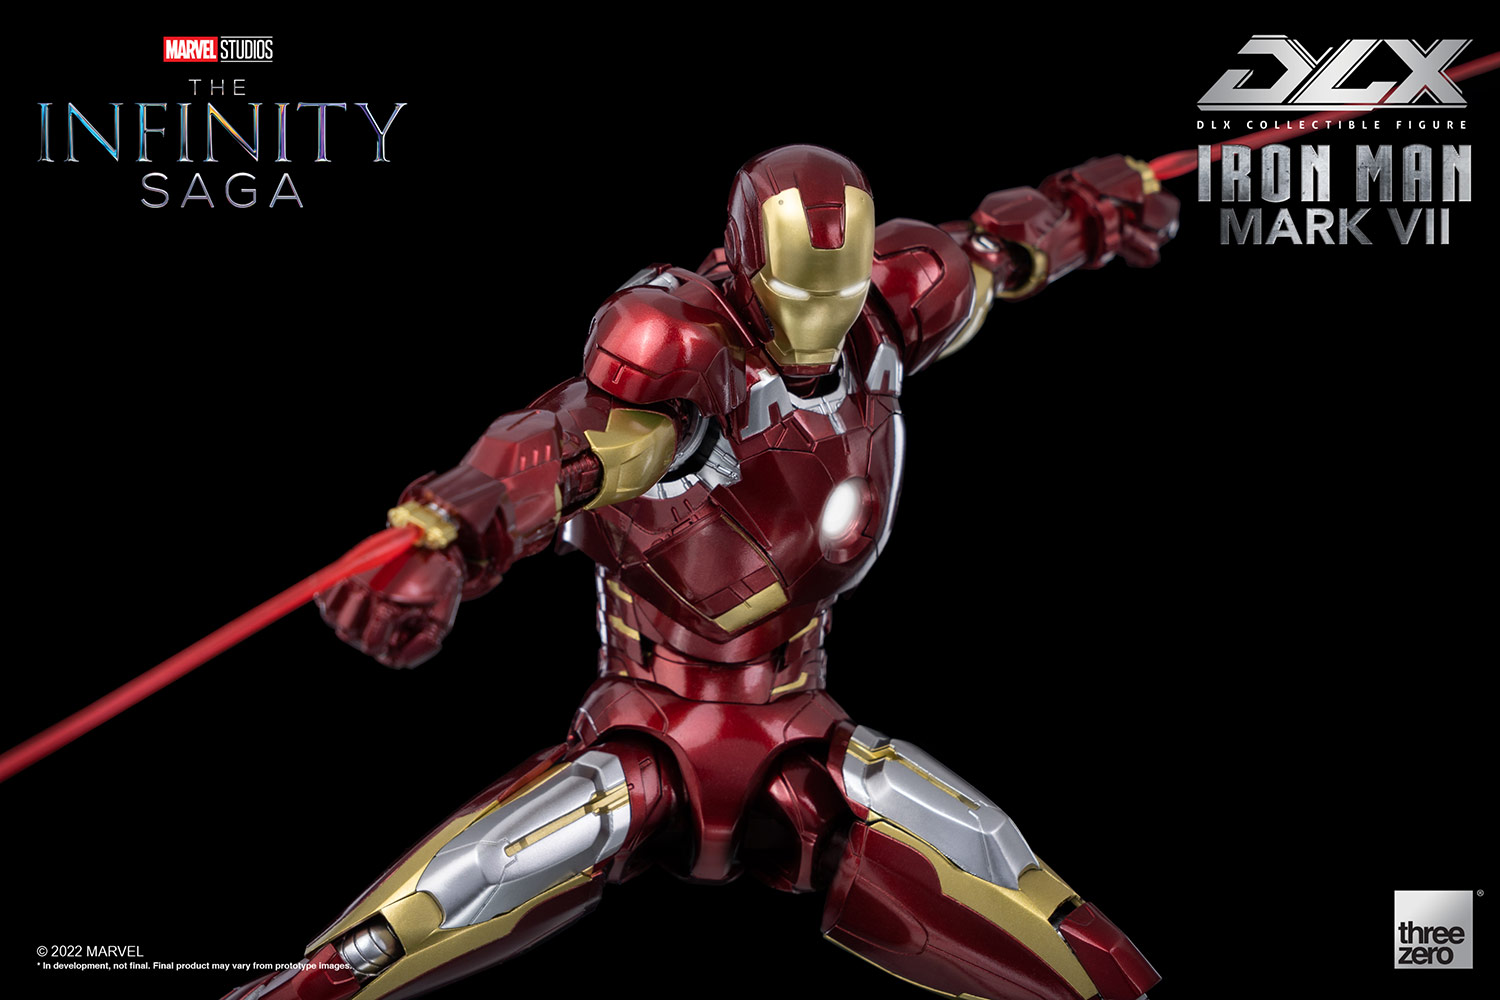 DLX Iron Man Mark 7(DLX アイアンマン・マーク7) Marvel Studios: The Infinity Saga(マーベル・スタジオ: インフィニティ・サーガ) 1/12 完成品 可動フィギュア threezero(スリーゼロ)